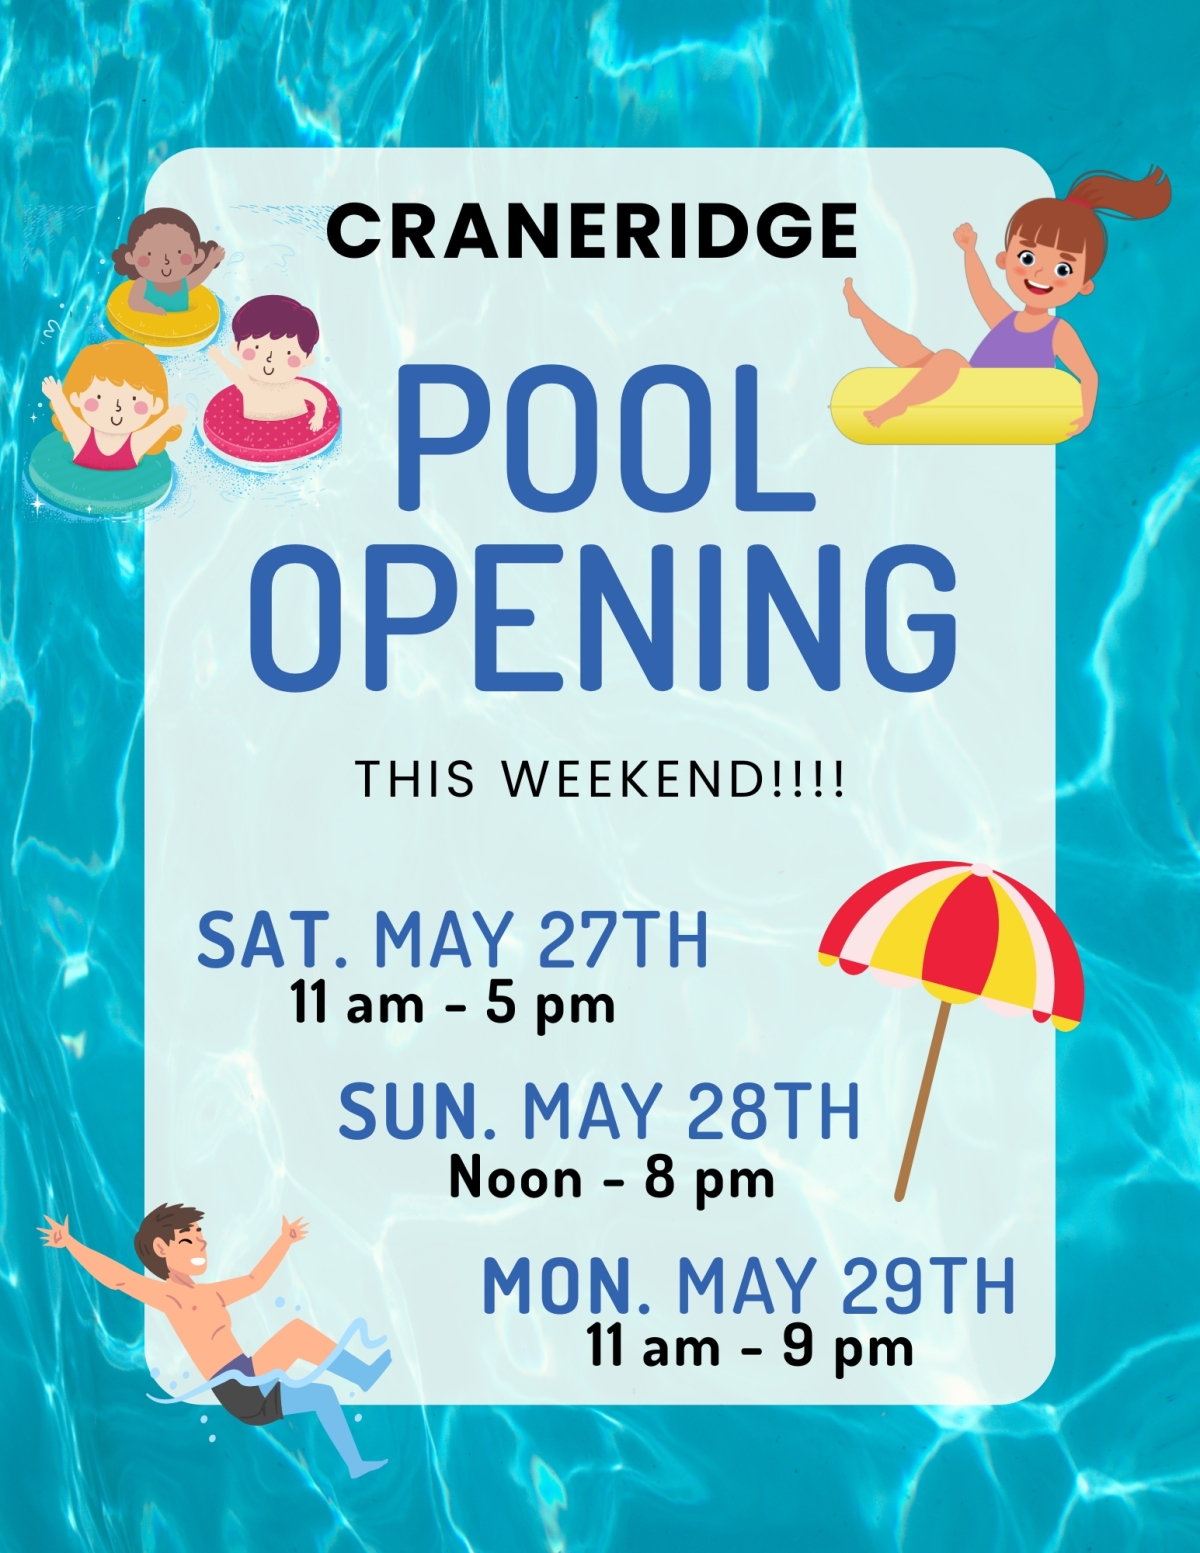 Pool opening this Weekend!